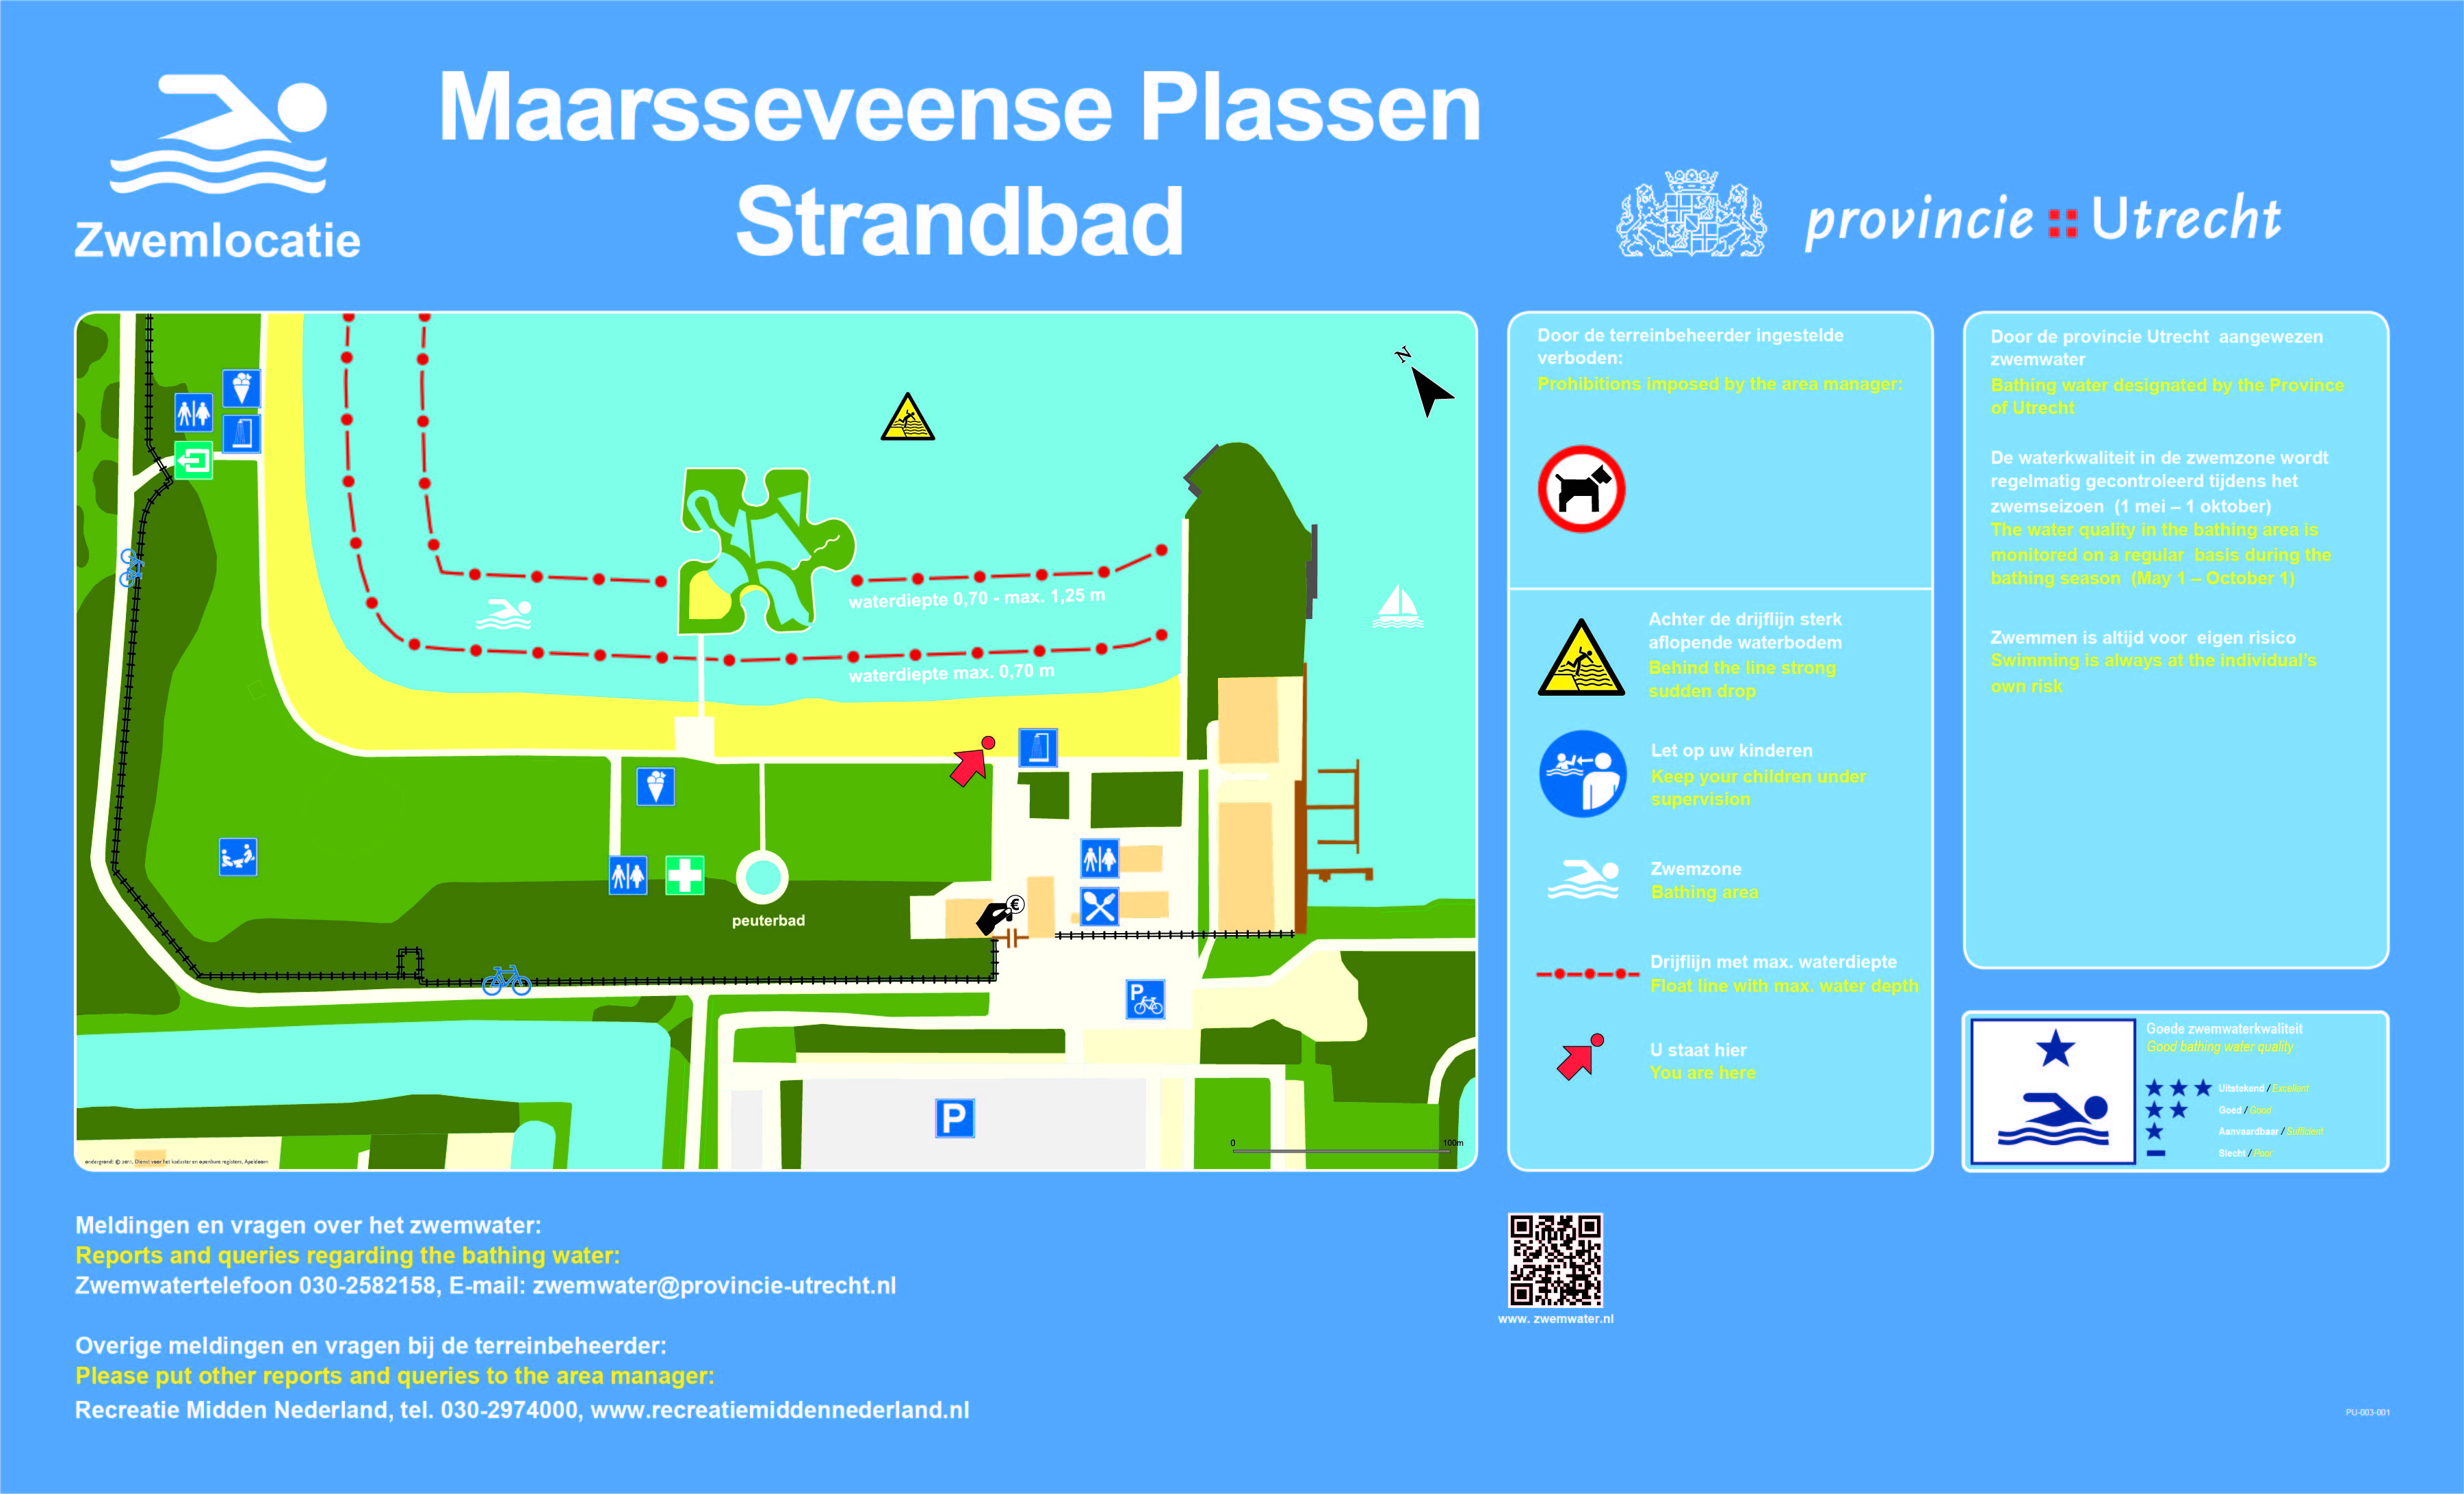 Het informatiebord bij zwemlocatie Maarsseveense Plassen Strandbad